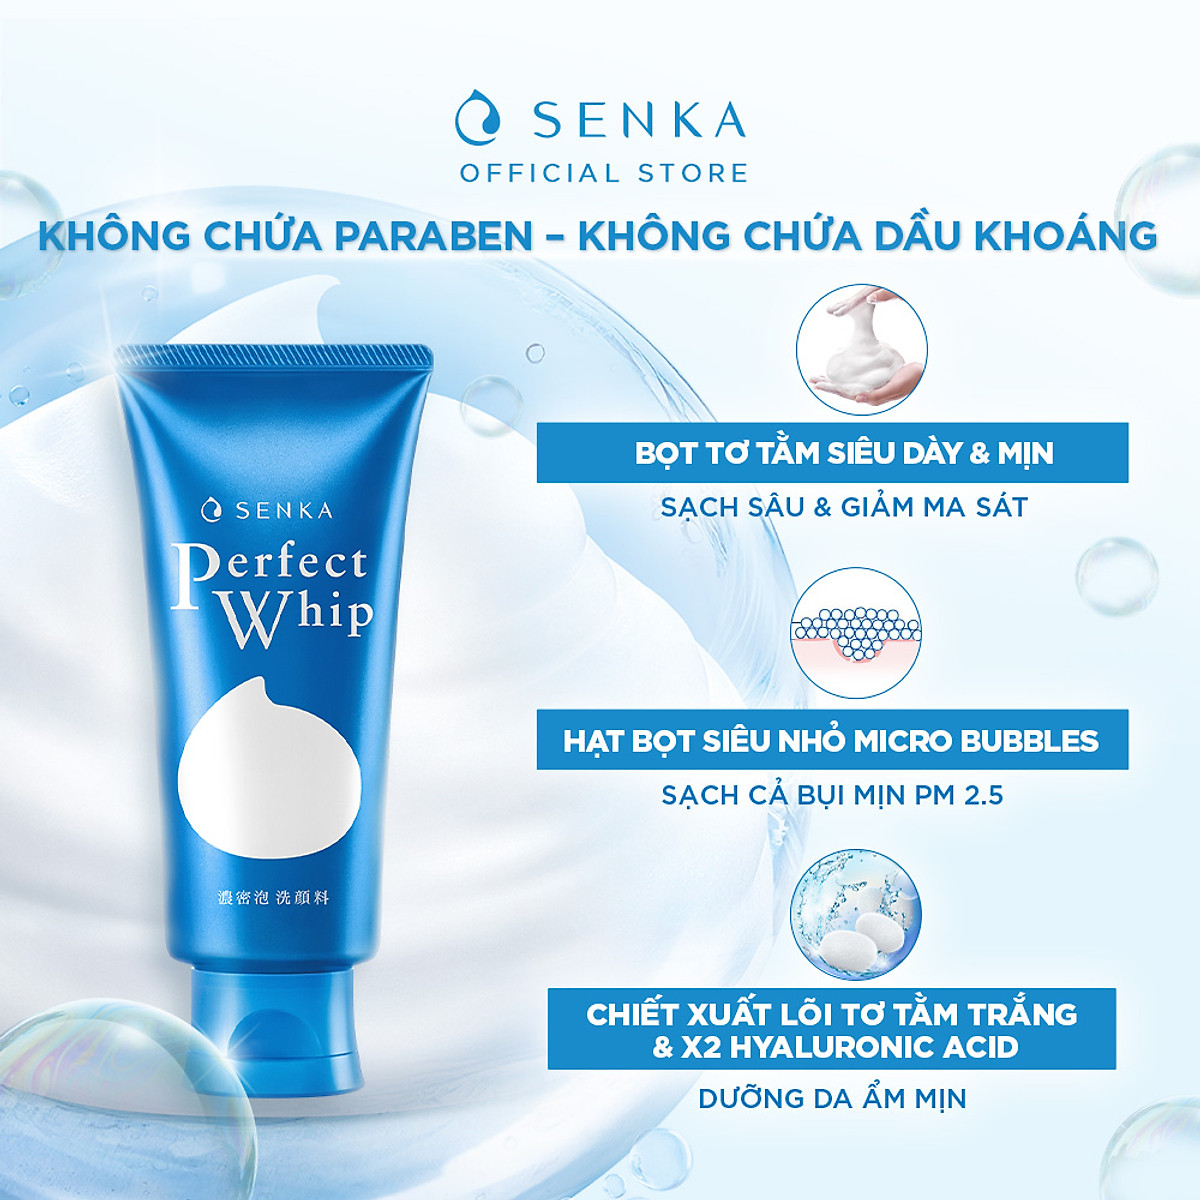 Có rất nhiều công dụng của sữa rửa mặt Senka đem lại hiệu quả tốt để cải thiện làn da của chị em luôn tươi sáng và mịn màng